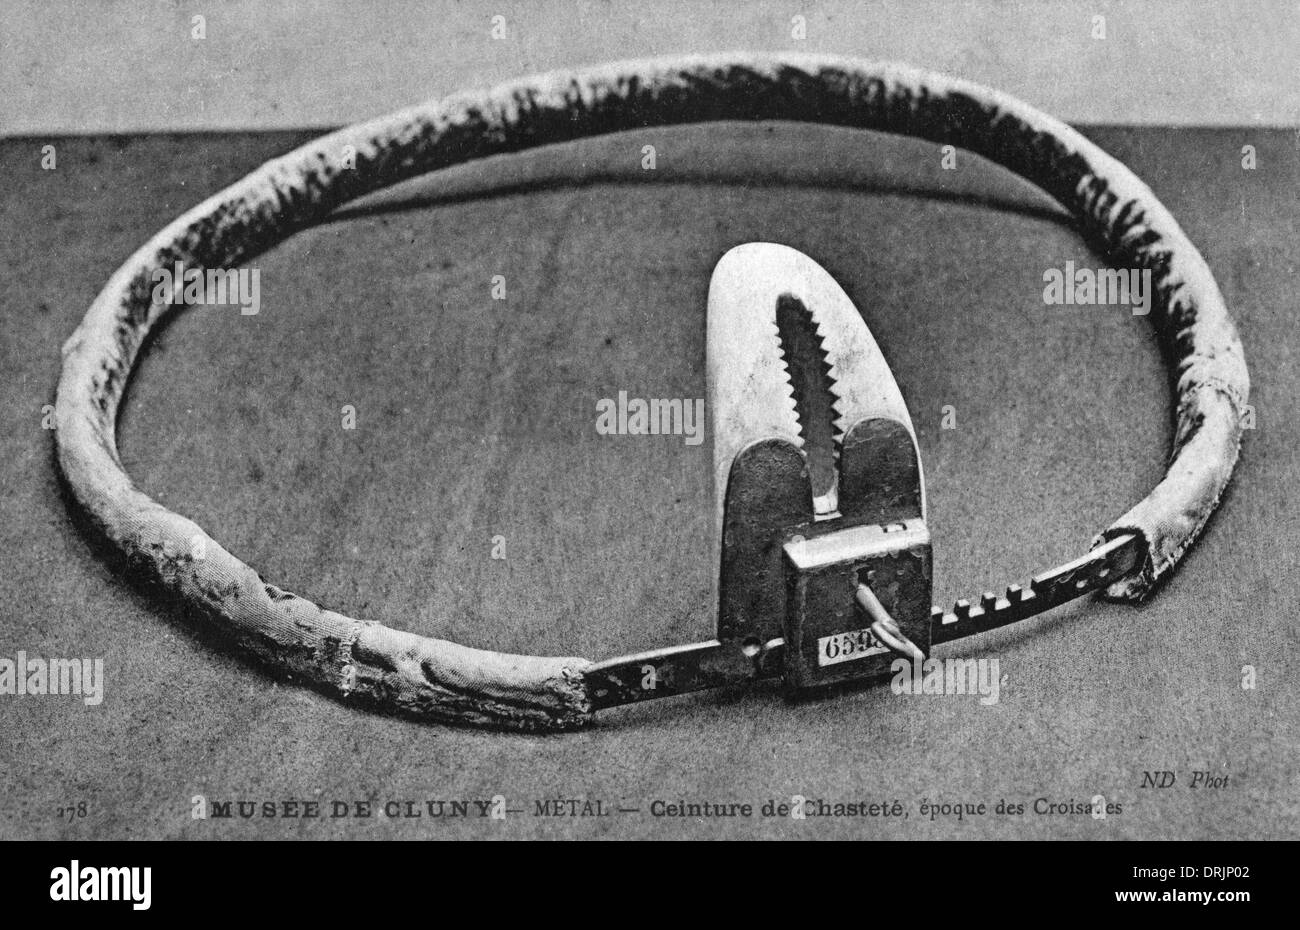 Une ceinture de chasteté en métal de l'époque des Croisades Photo Stock -  Alamy